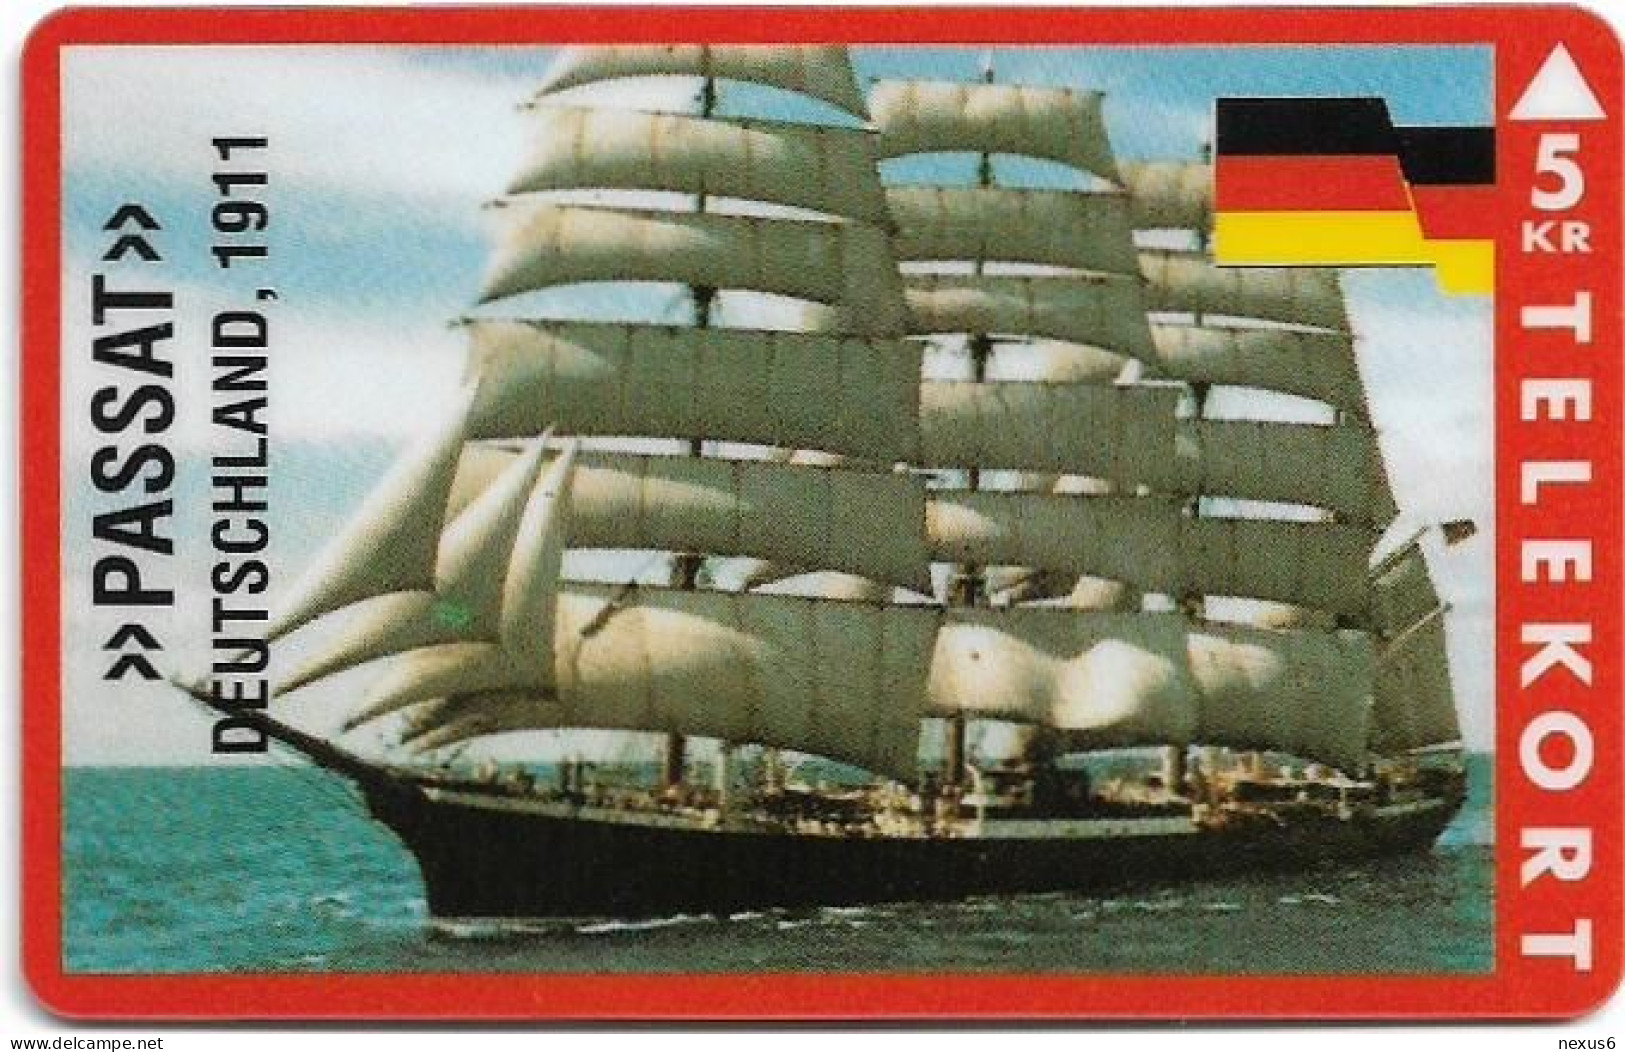 Denmark - KTAS - Ships (Red) - Germany - Passat - TDKP147 - 05.1995, 5kr, 1.500ex, Used - Danemark